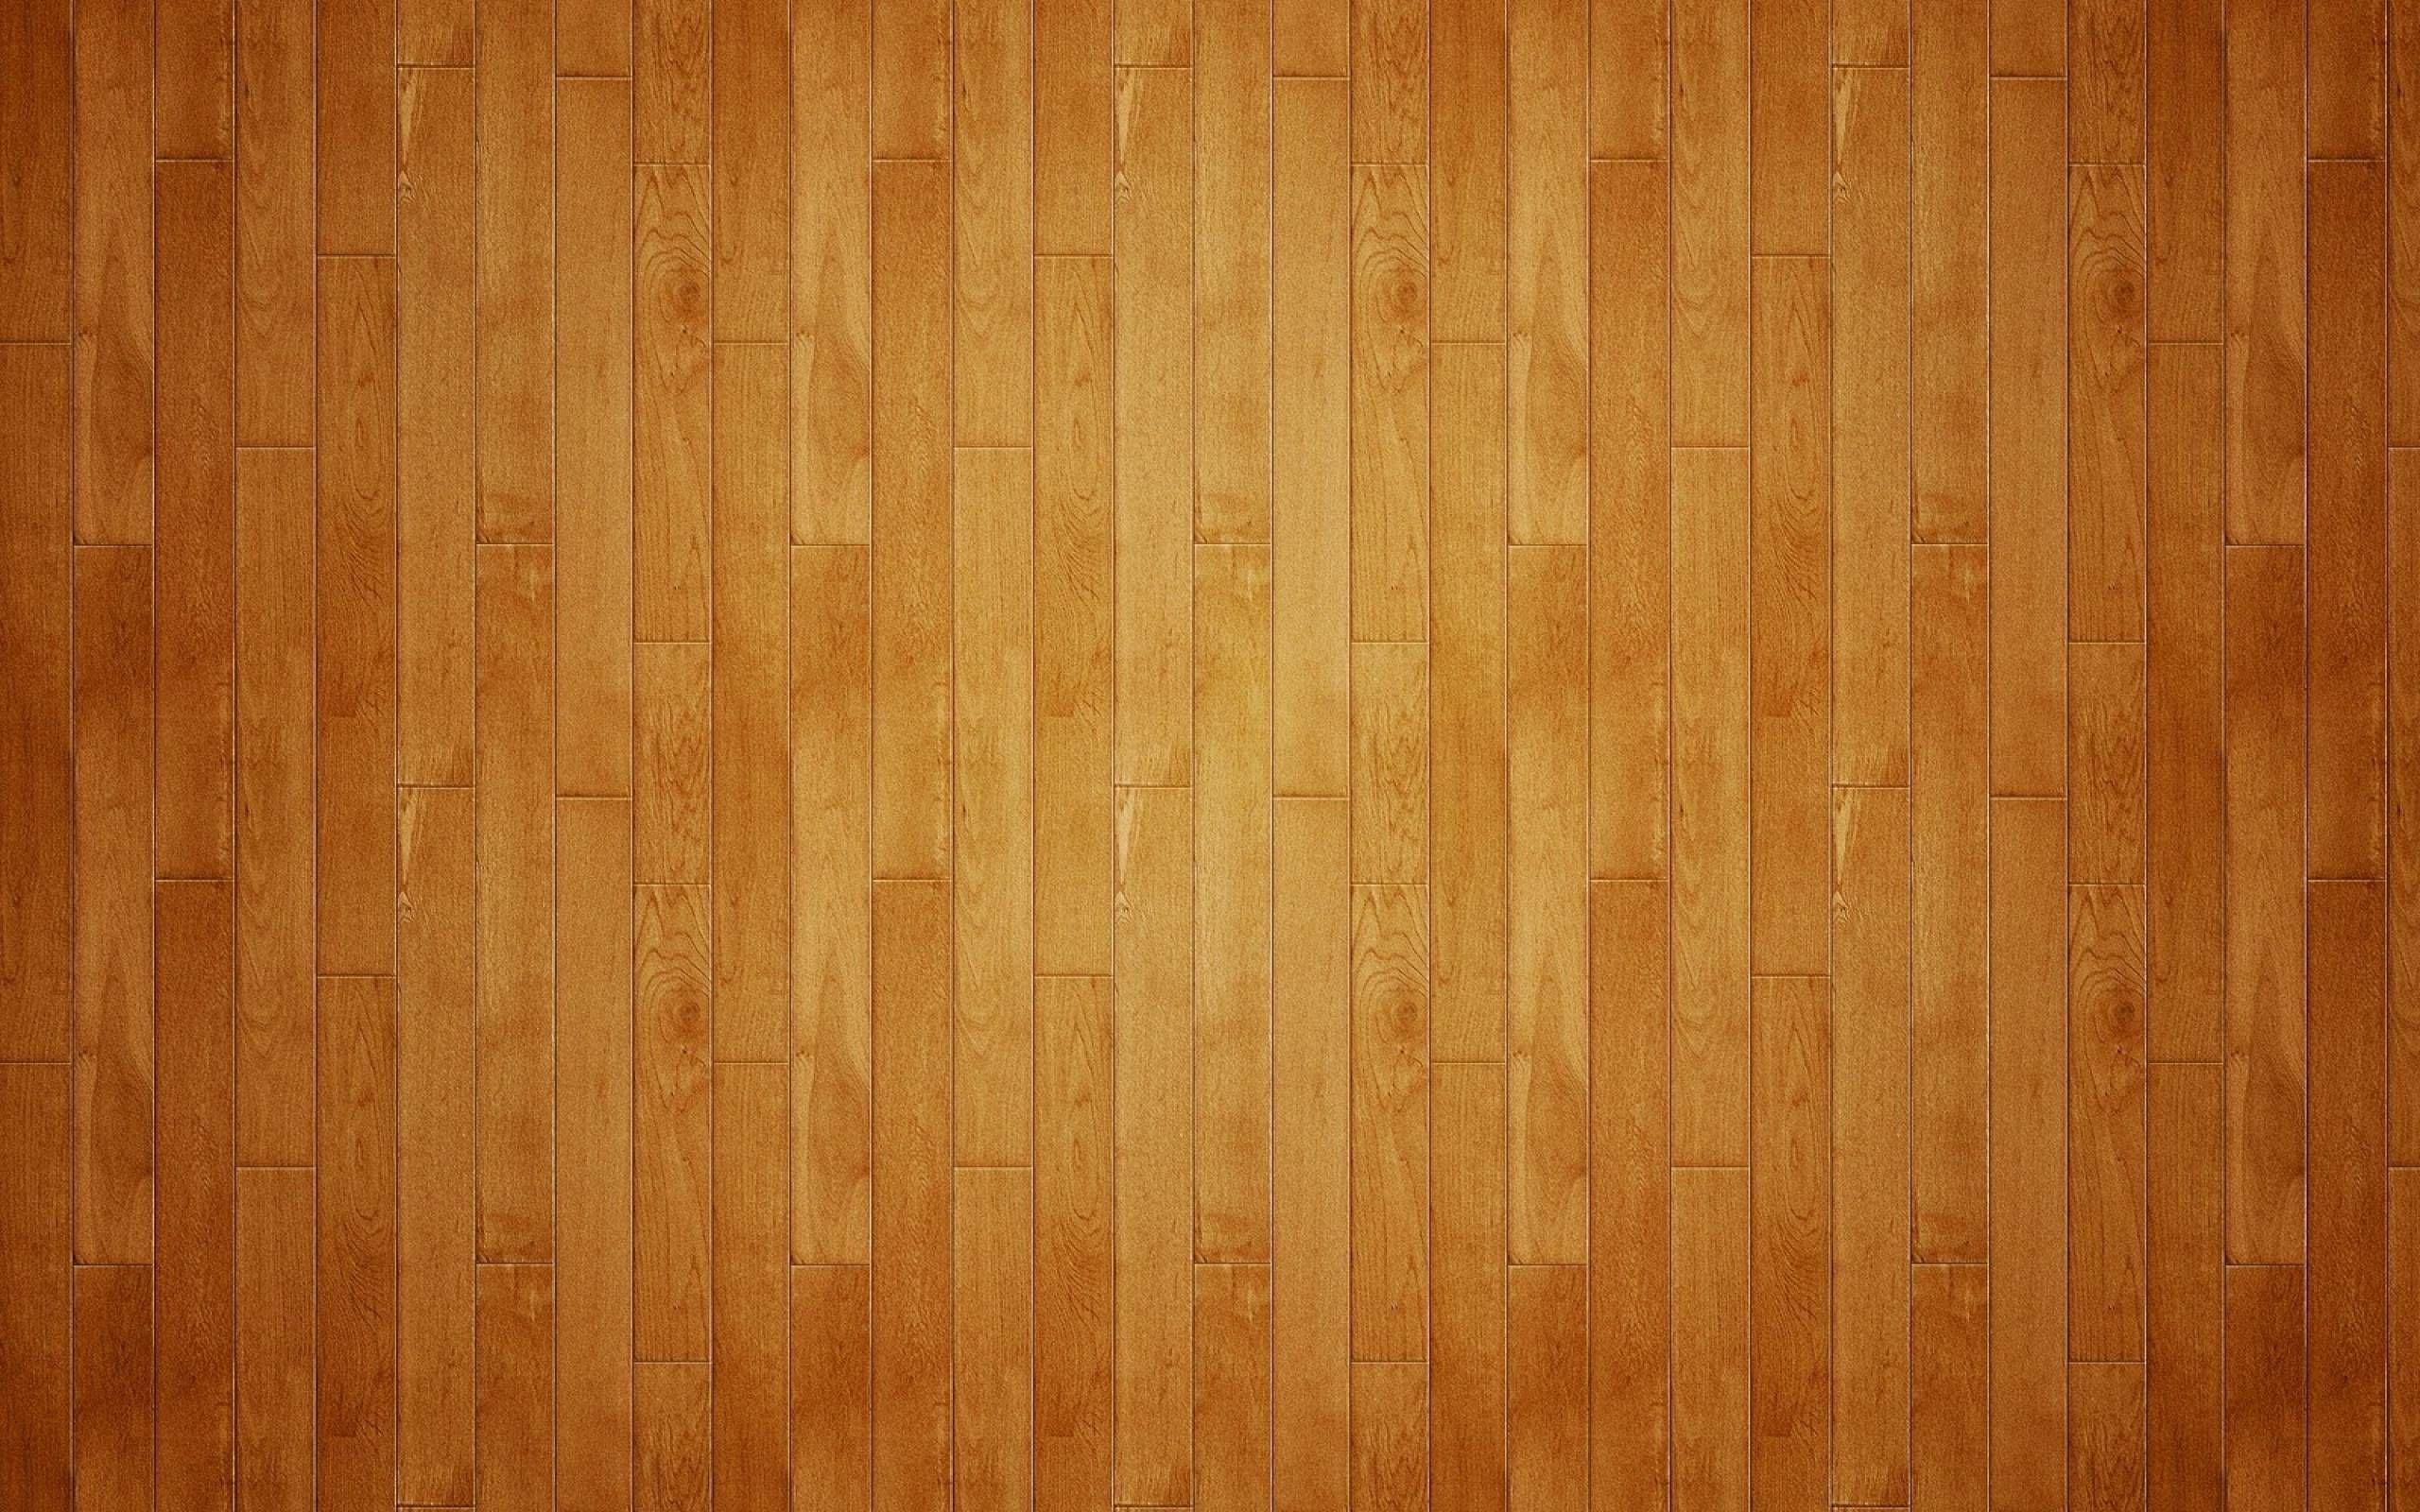 Hình nền gỗ cam đang trở thành một xu hướng mới trong các thiết kế nội thất trong những năm gần đây. Hình nền gỗ cam mang đến cho bạn không gian tươi sáng, năng động và đầy sinh lực. Chọn ngay một trong những hình nền này để làm mới không gian làm việc hoặc nghỉ ngơi của bạn.